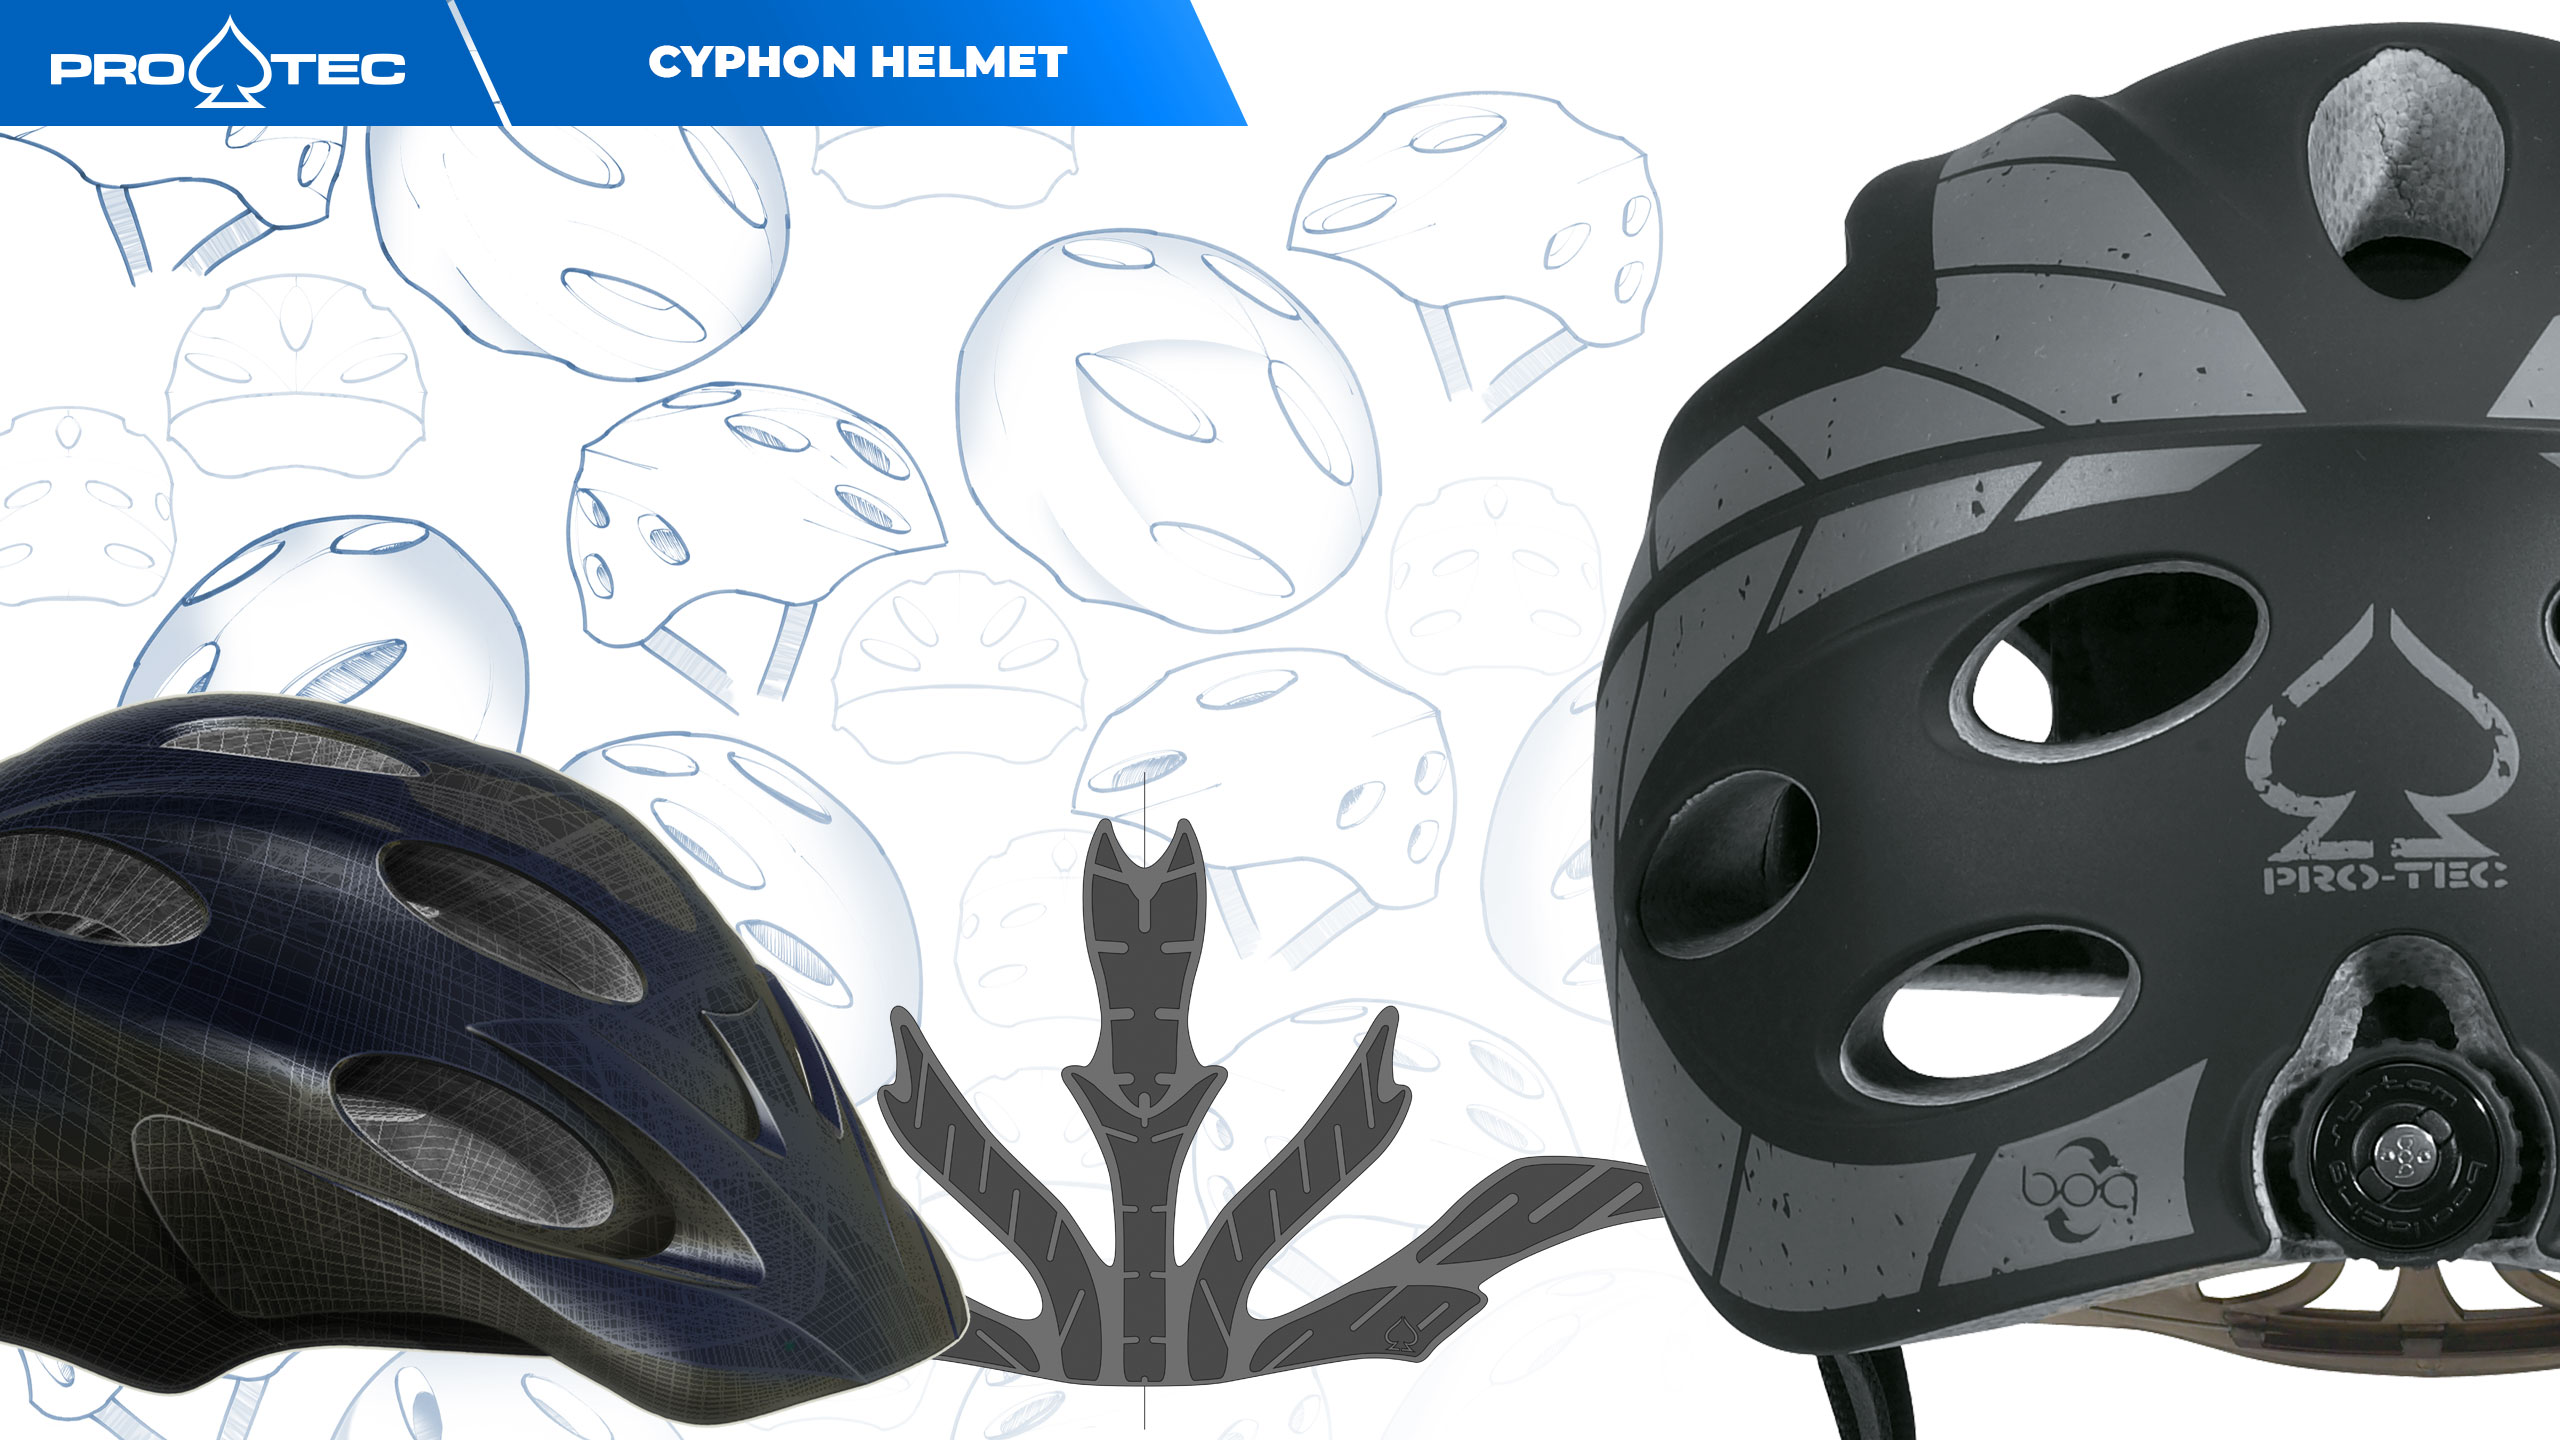 Pro-tec Cyphon Helmet